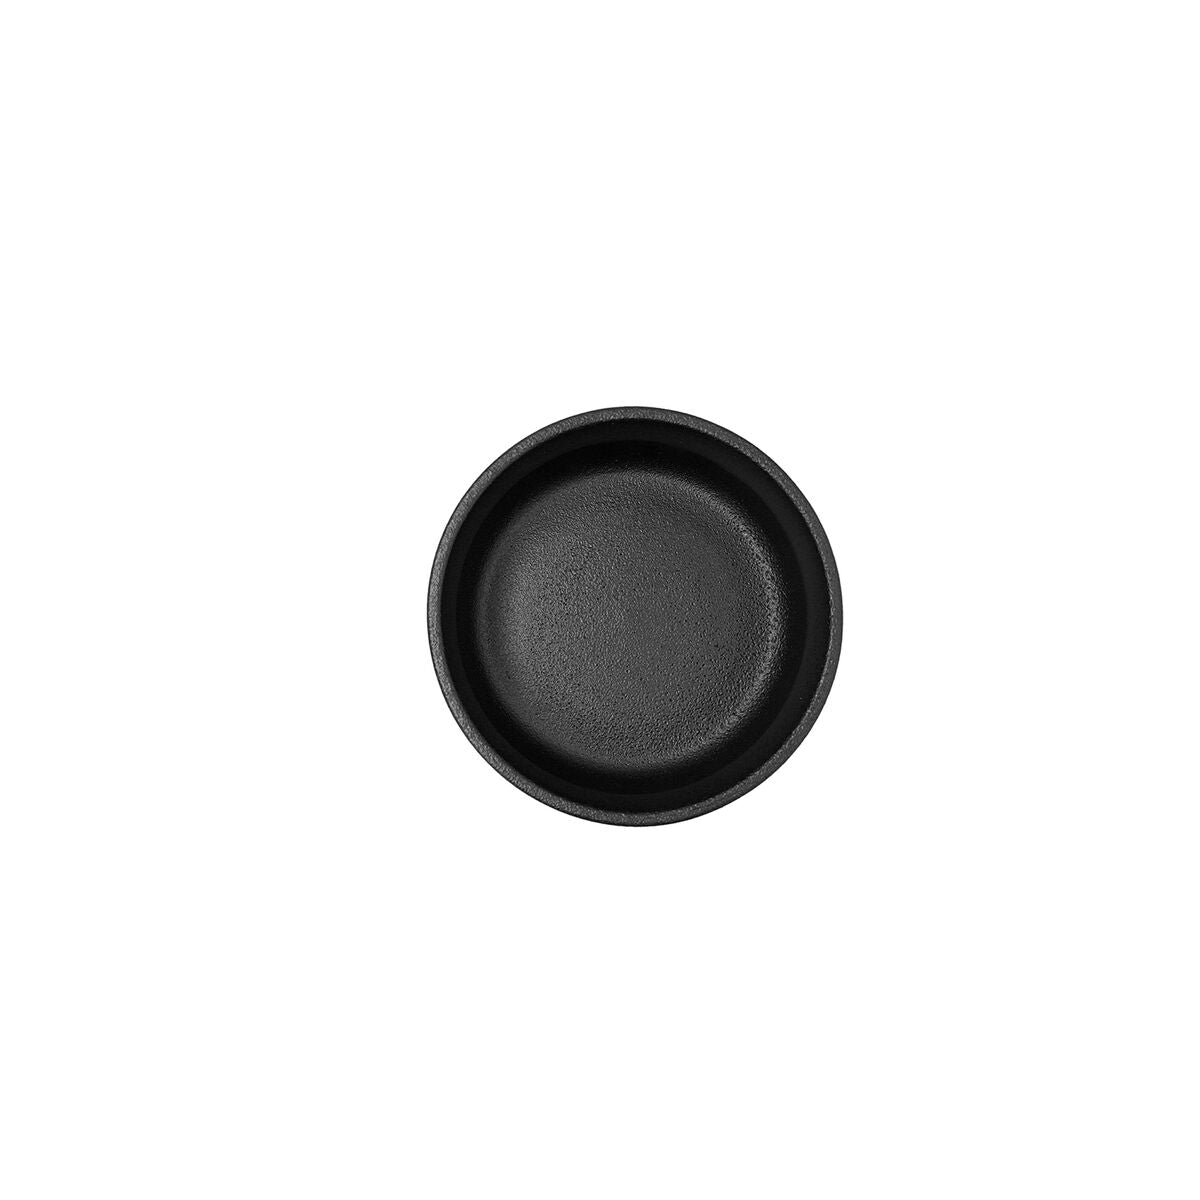 Bowl Bidasoa Fosil Black Ceramic 11,8 x 11,8 x 5,9 cm (6 Units)